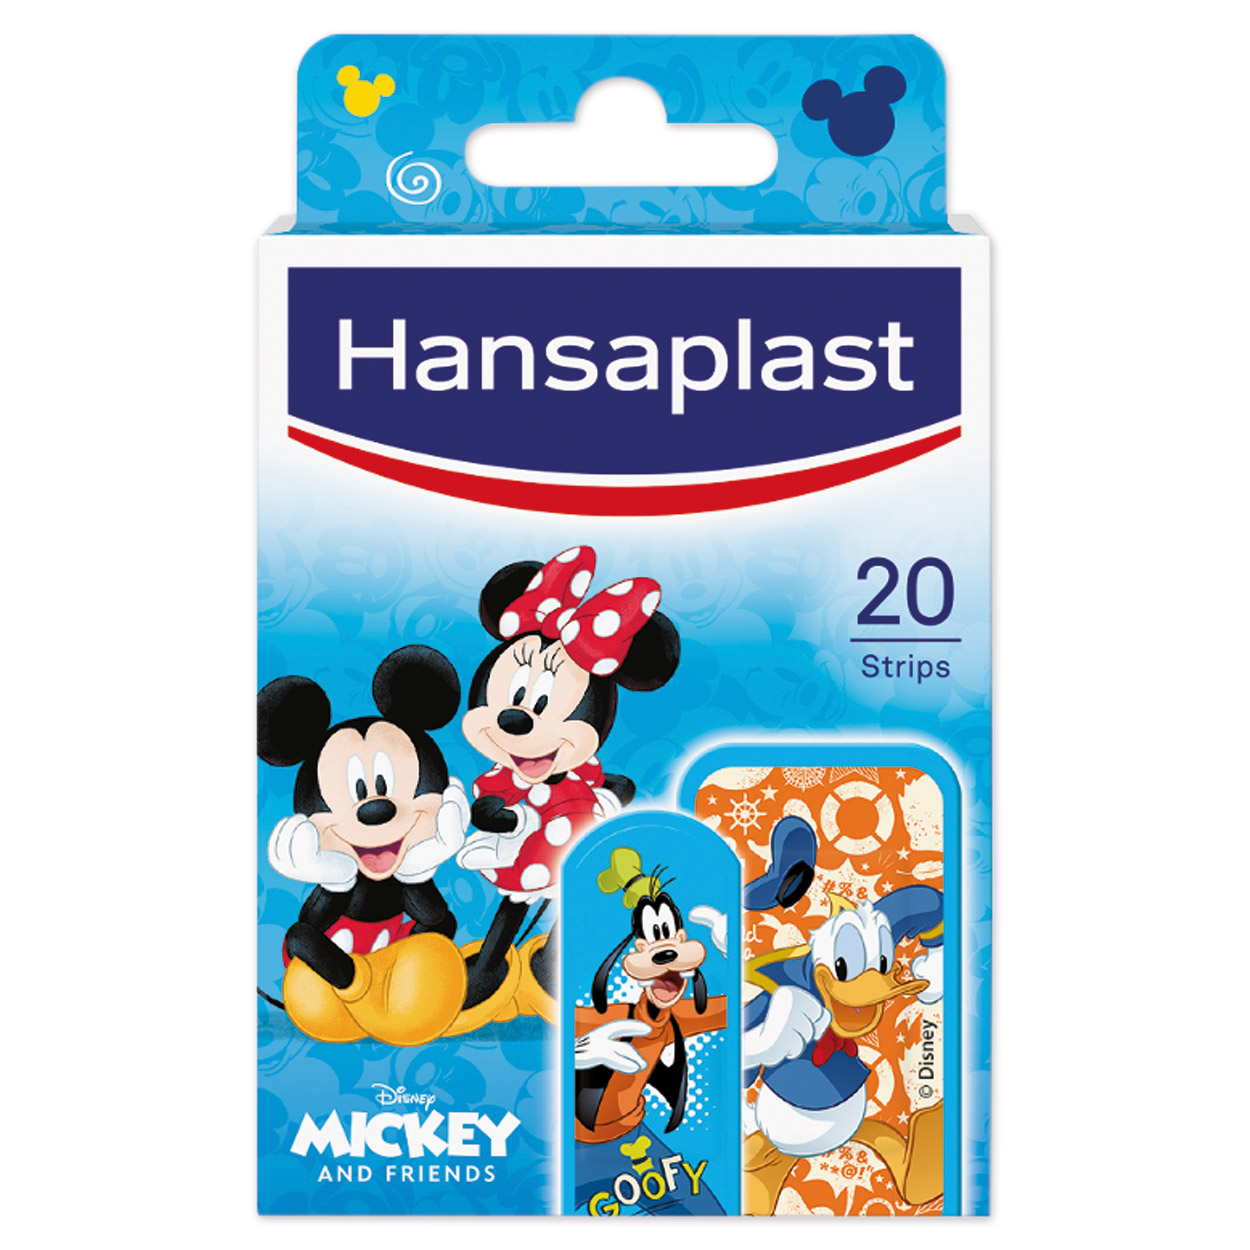 Hansaplast Kinder Wundpflasterstrips Mickey & Friends - Packung à 20 Stück